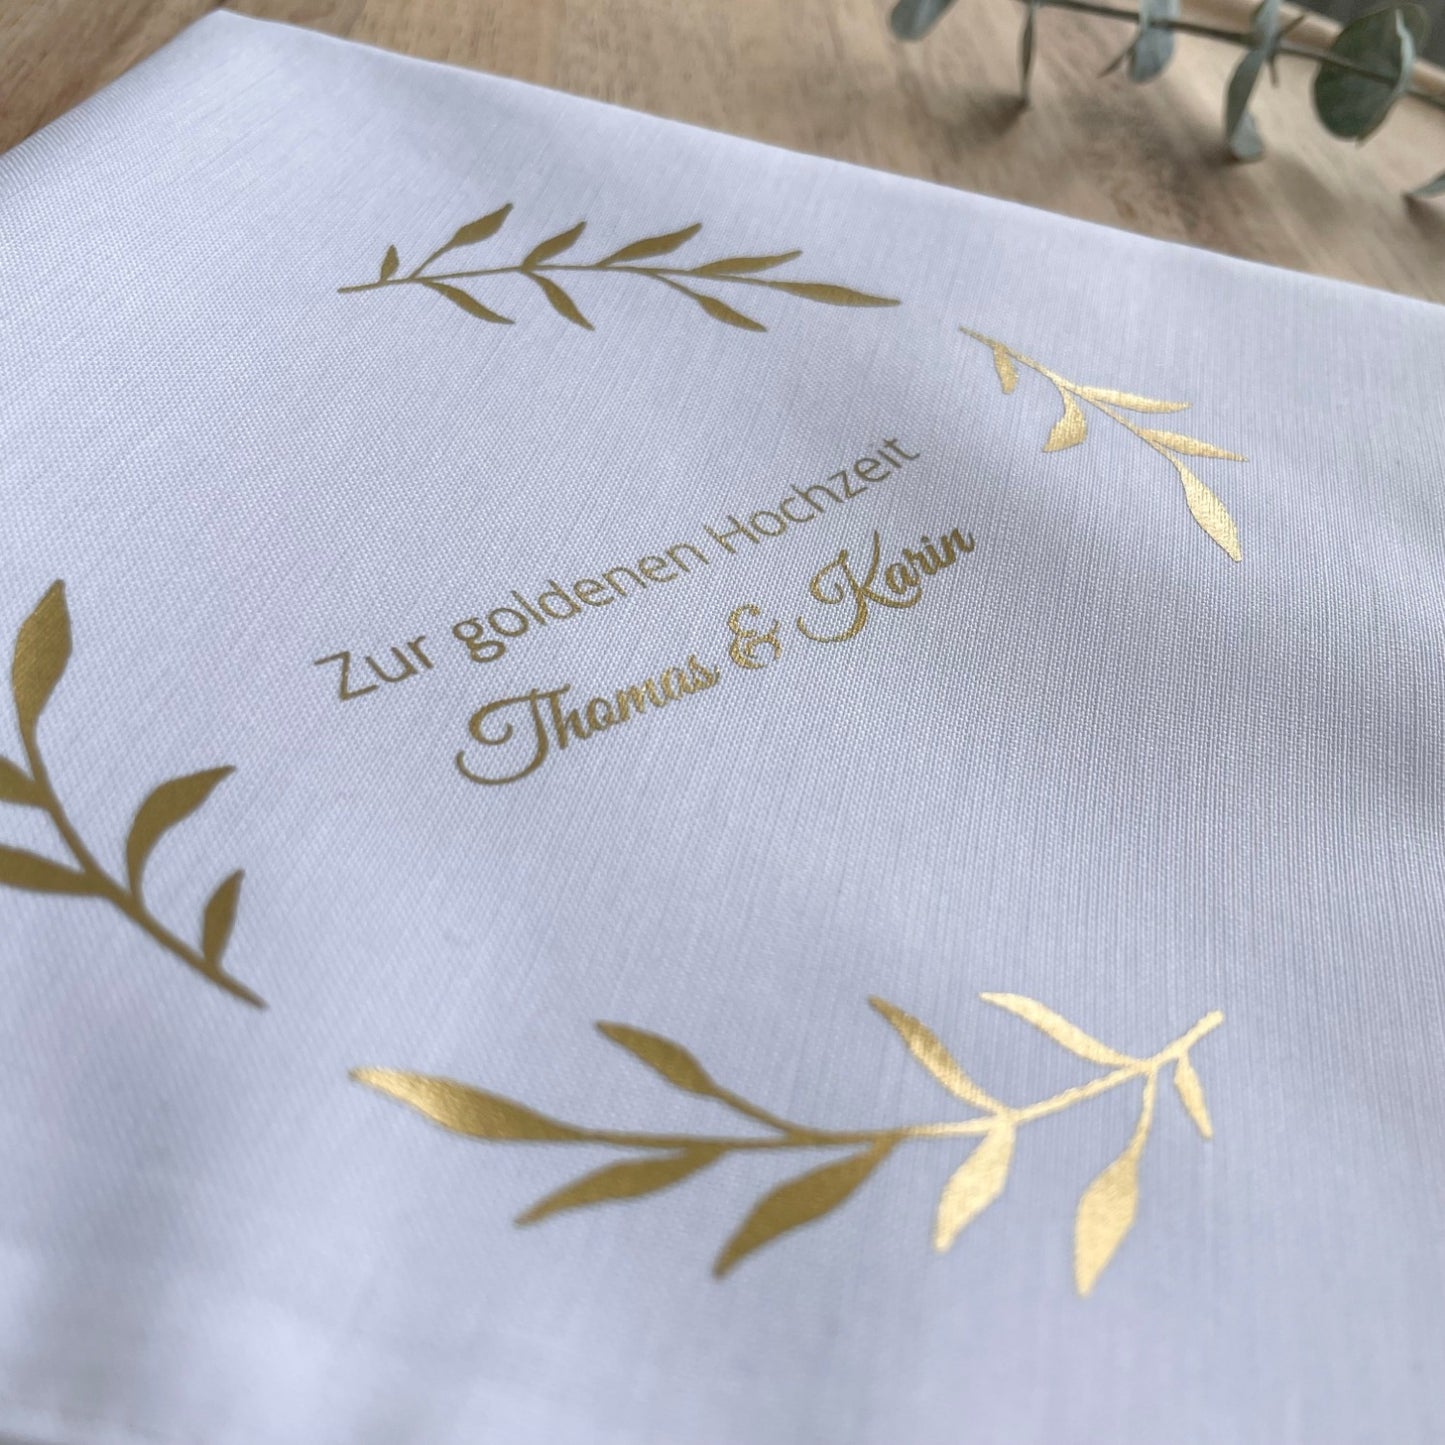 Stofftaschentuch zur goldenen Hochzeit - Blätterkranz